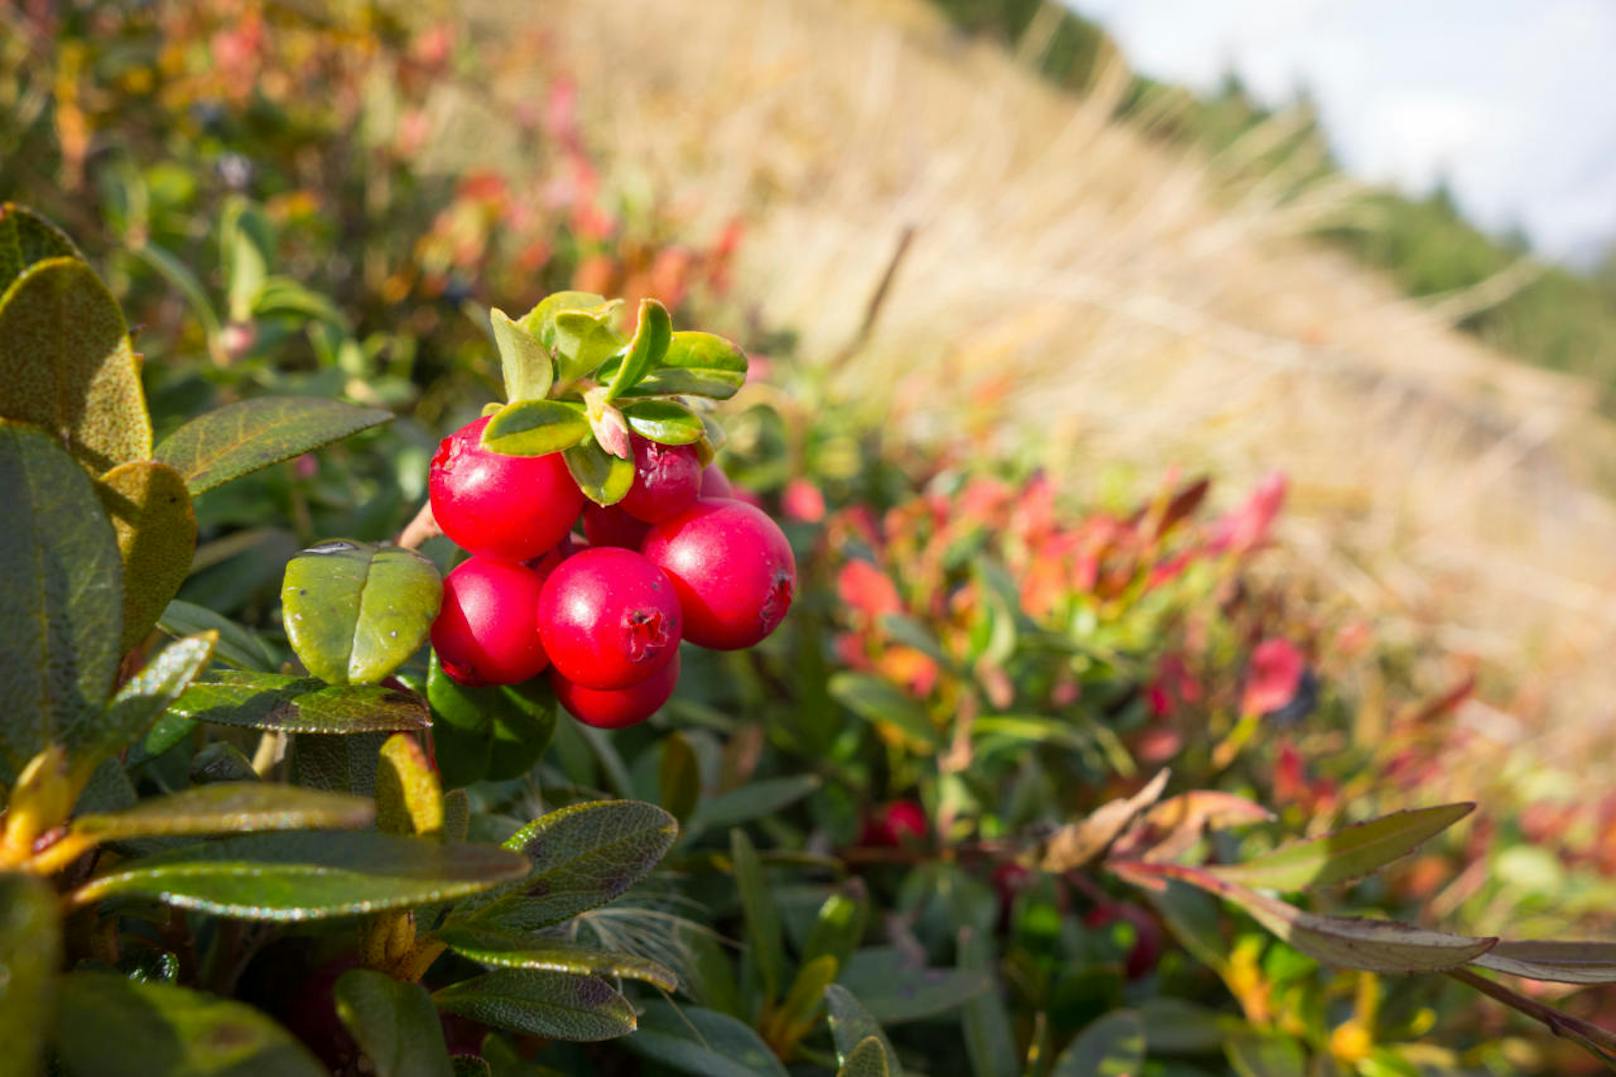 Die auch Großfrüchtige Moosbeere genannten Cranberrys kann man auch selbst anbauen. Wichtig ist dabei ein humoser, feuchter Boden an sonniger oder halbschattiger Lage. Vorsicht ist bei kälteren Temperaturen angebracht, da die Beeren nicht besonders winterhart sind.